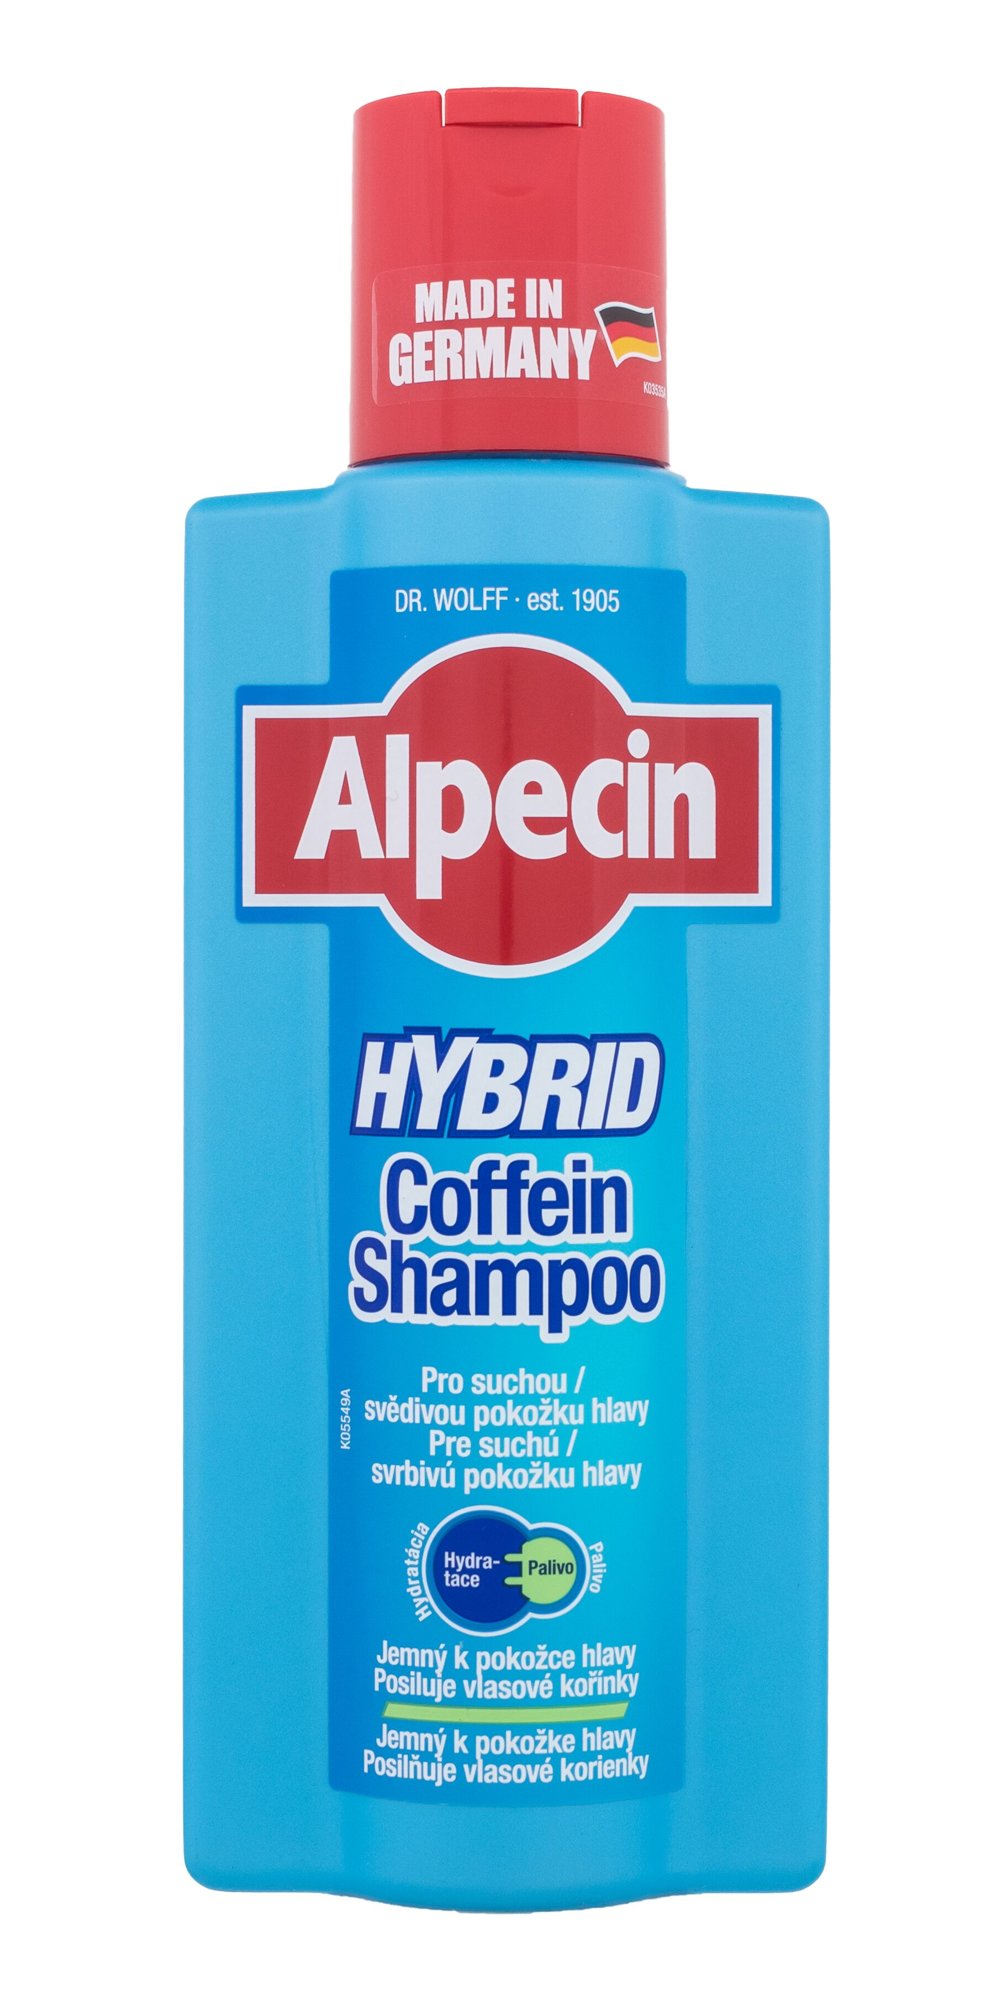 Alpecin Hybrid Coffein Shampoo 375ml šampūnas